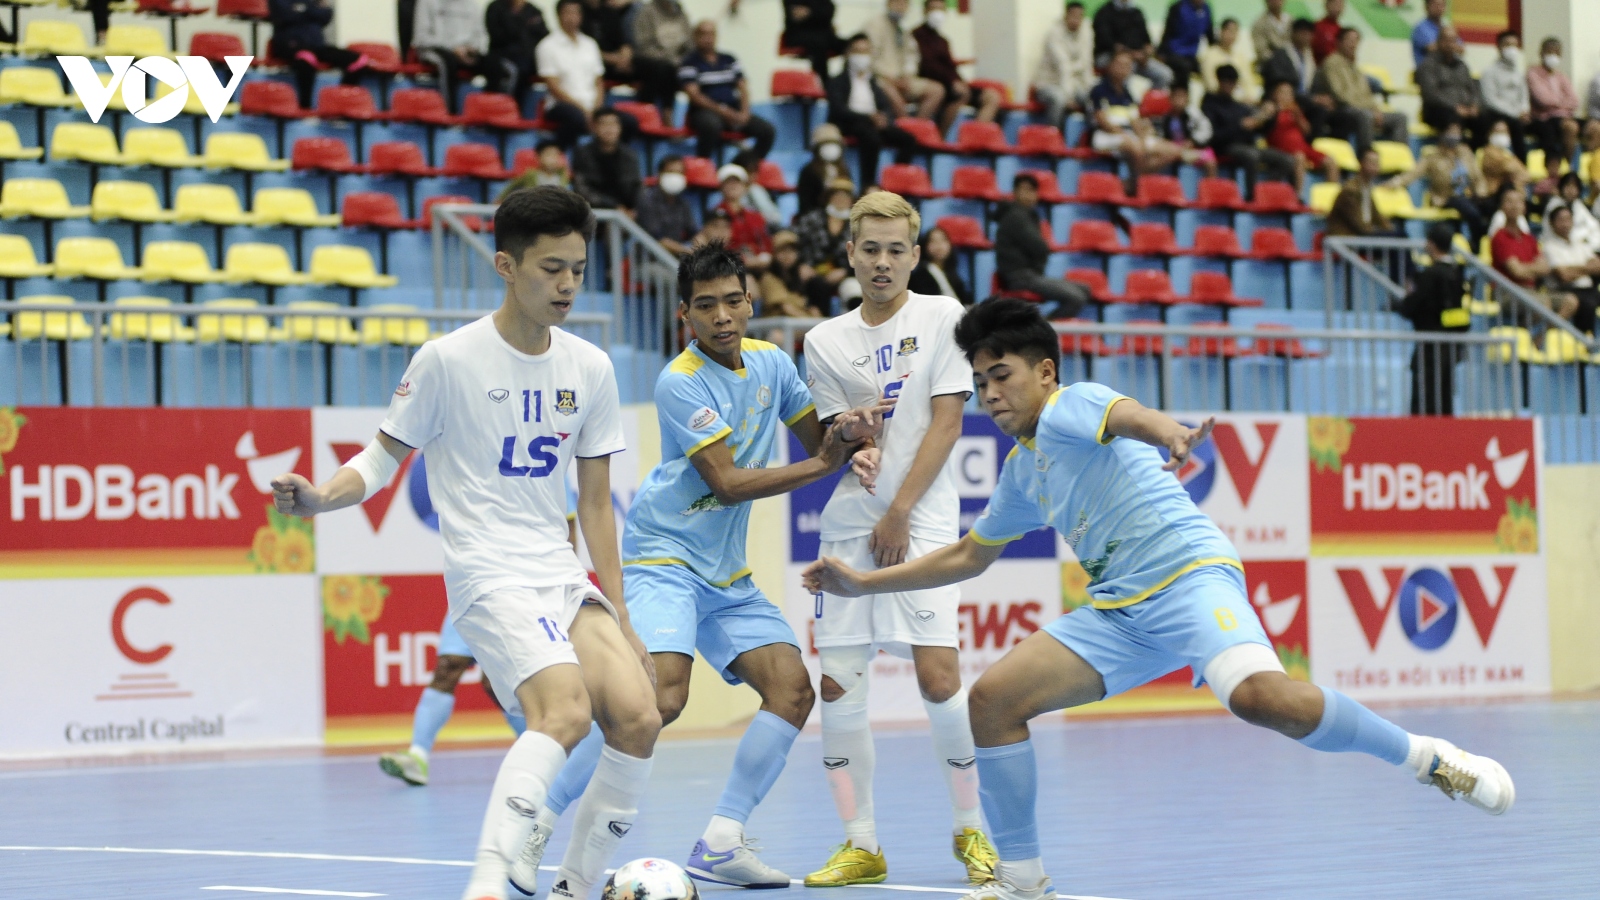 Giải Futsal HDBank VĐQG 2022: Sanvinest Khánh Hòa 0-3 Thái Sơn Bắc